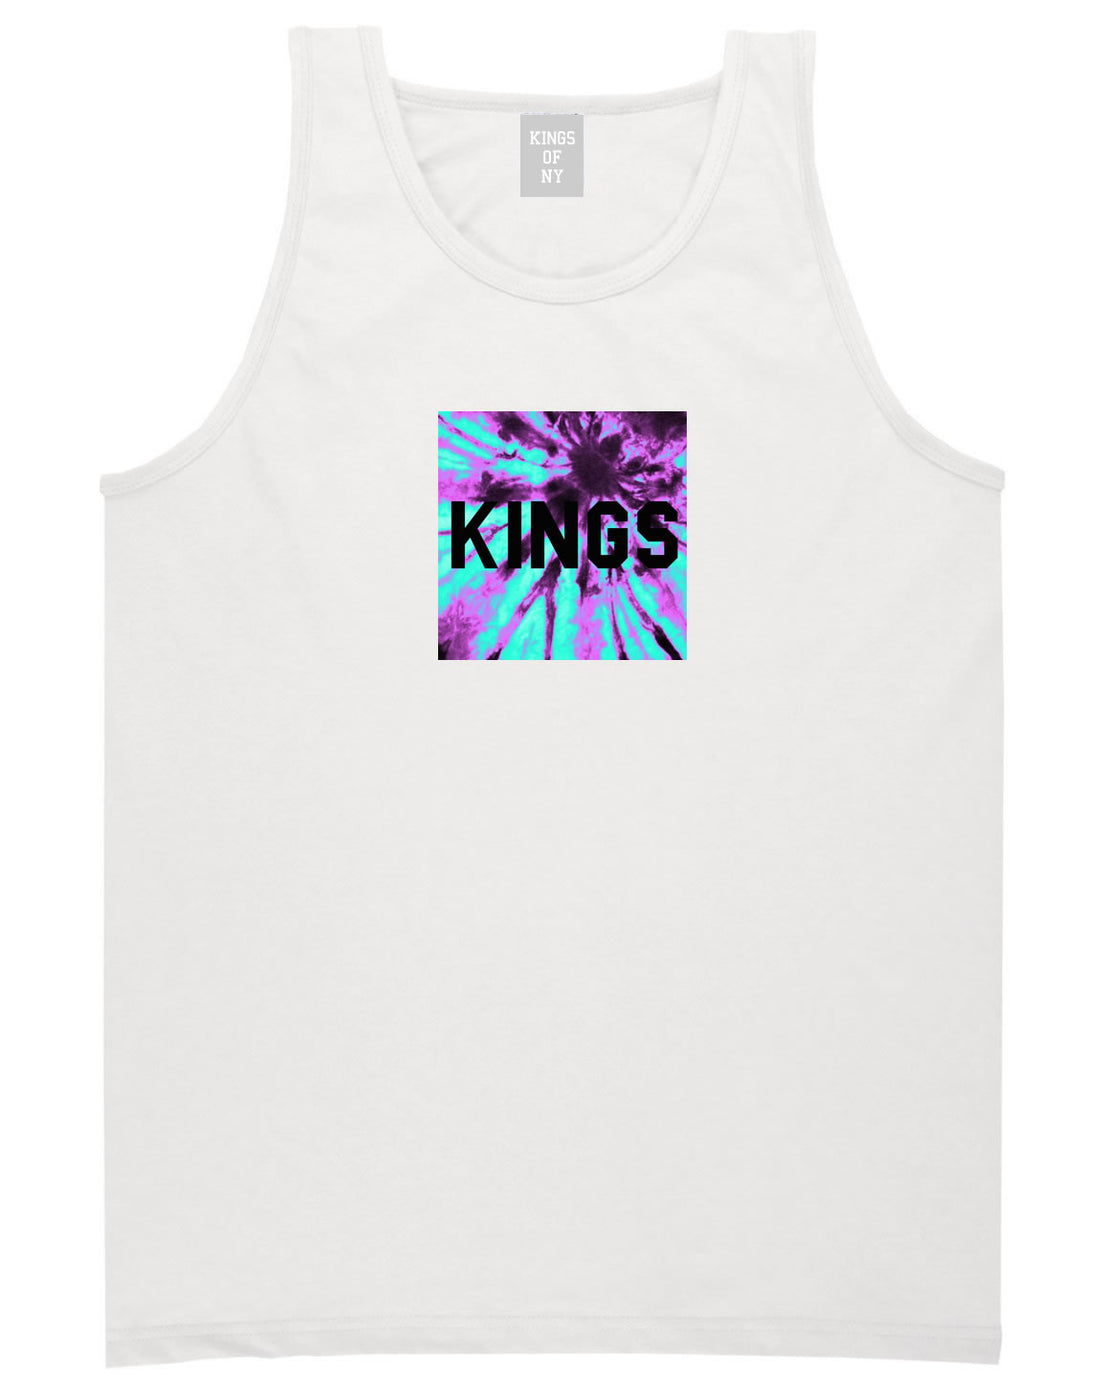 Kings Blue Tie Dye Box Logo Tank Top in White By Kings Of NY